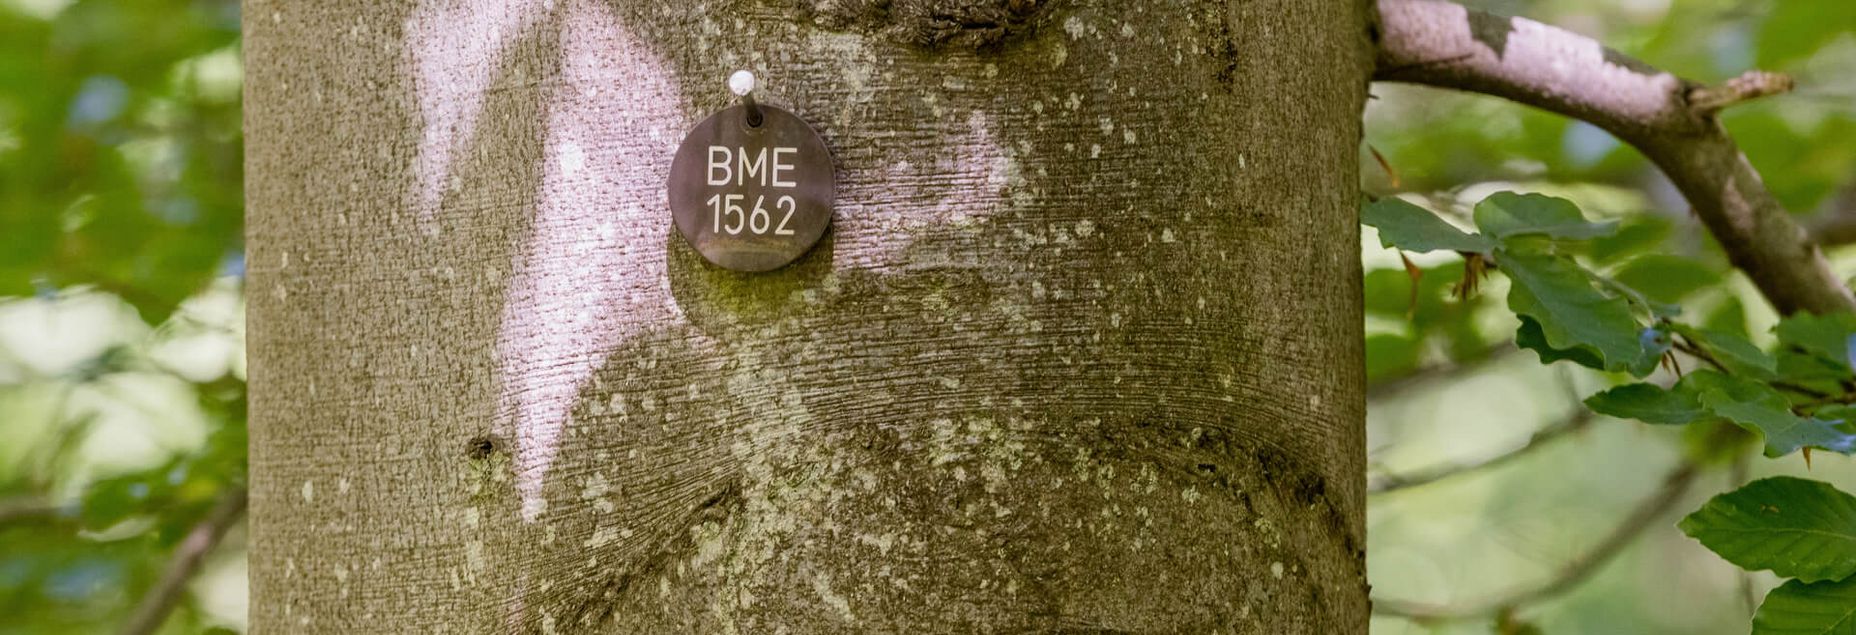 Baum BME 1562 - Plakette